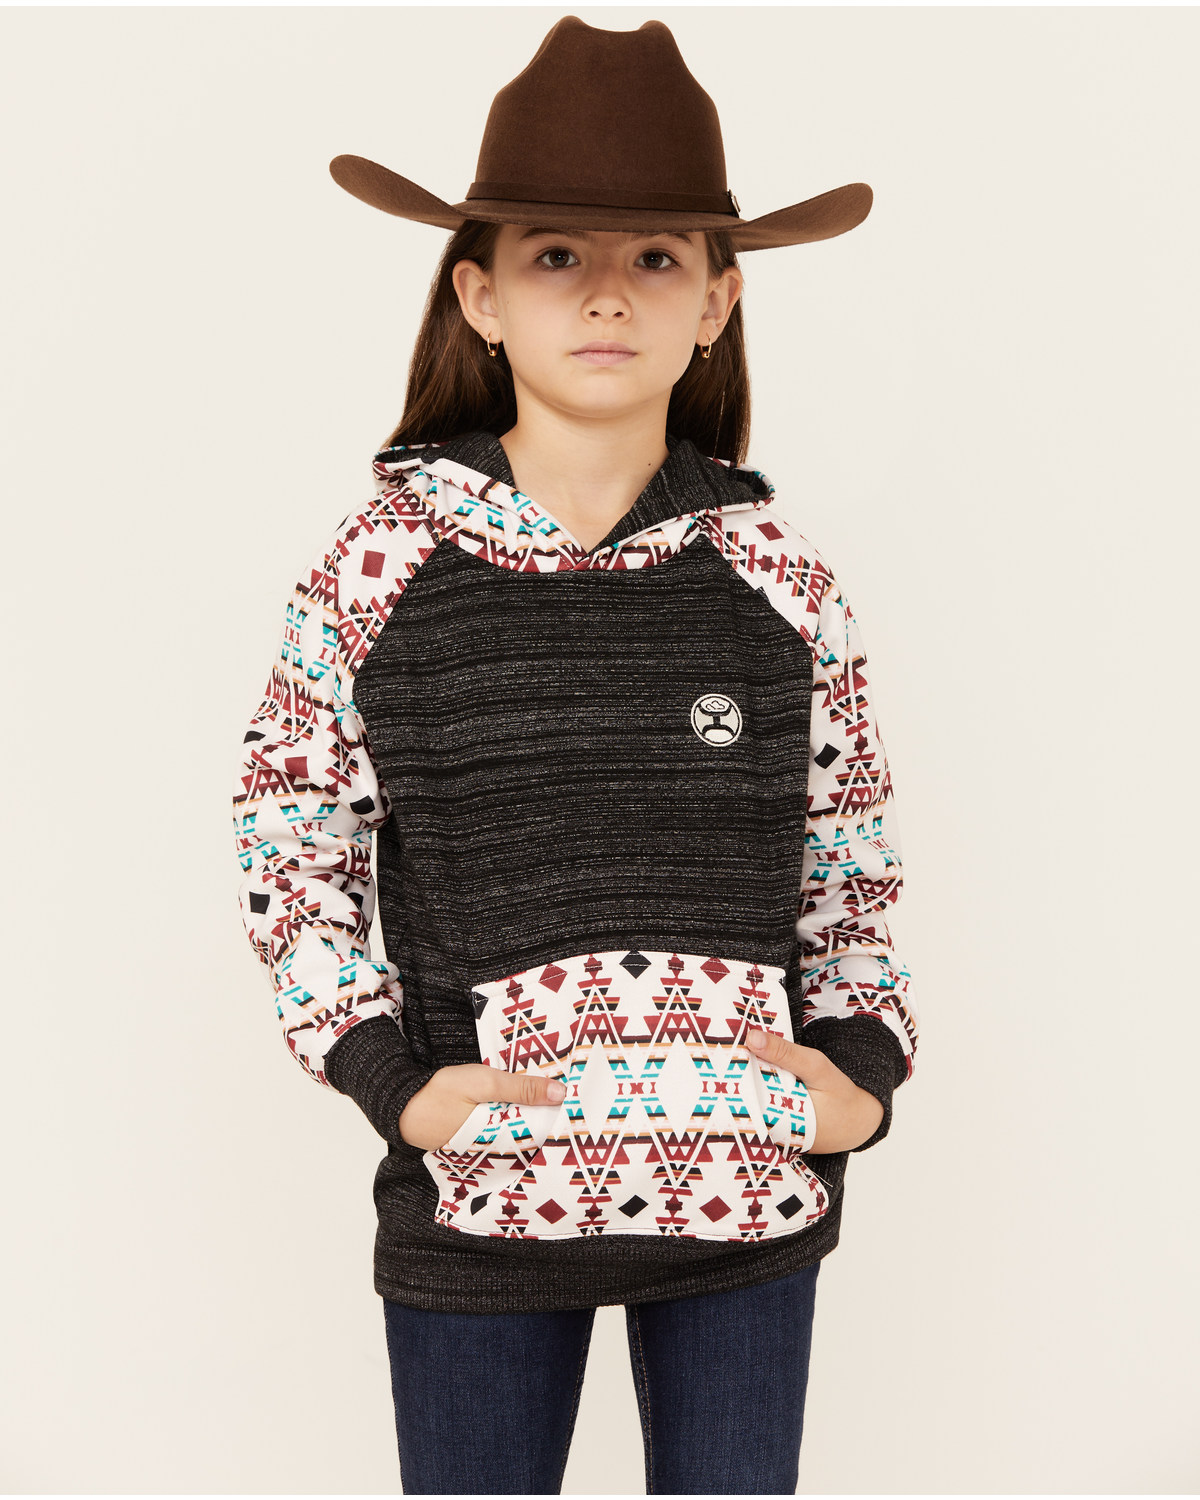 Hooey Girls' Southwestern Print Hooded Sweatshirt